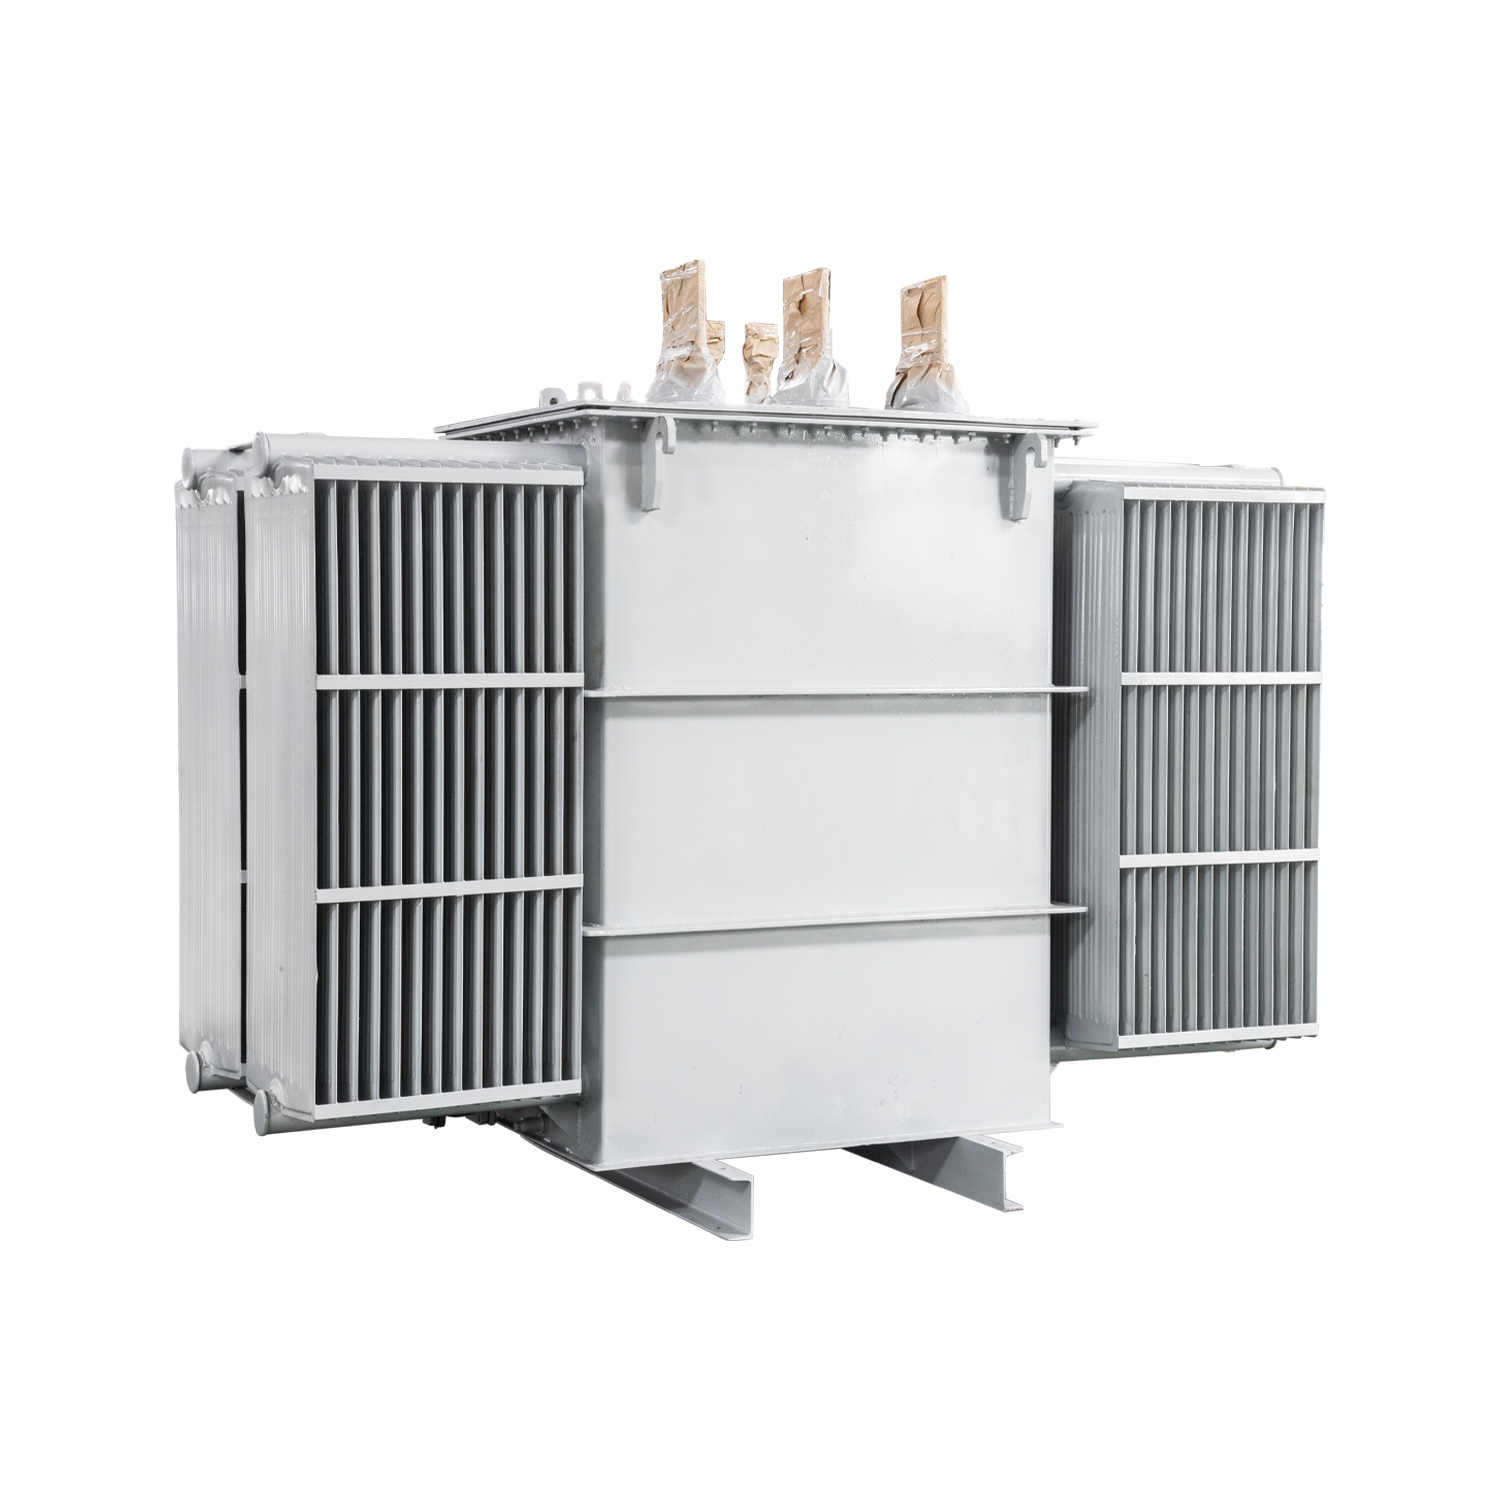 Regulator 90 kVA vertical furnace magnetic voltage regulator